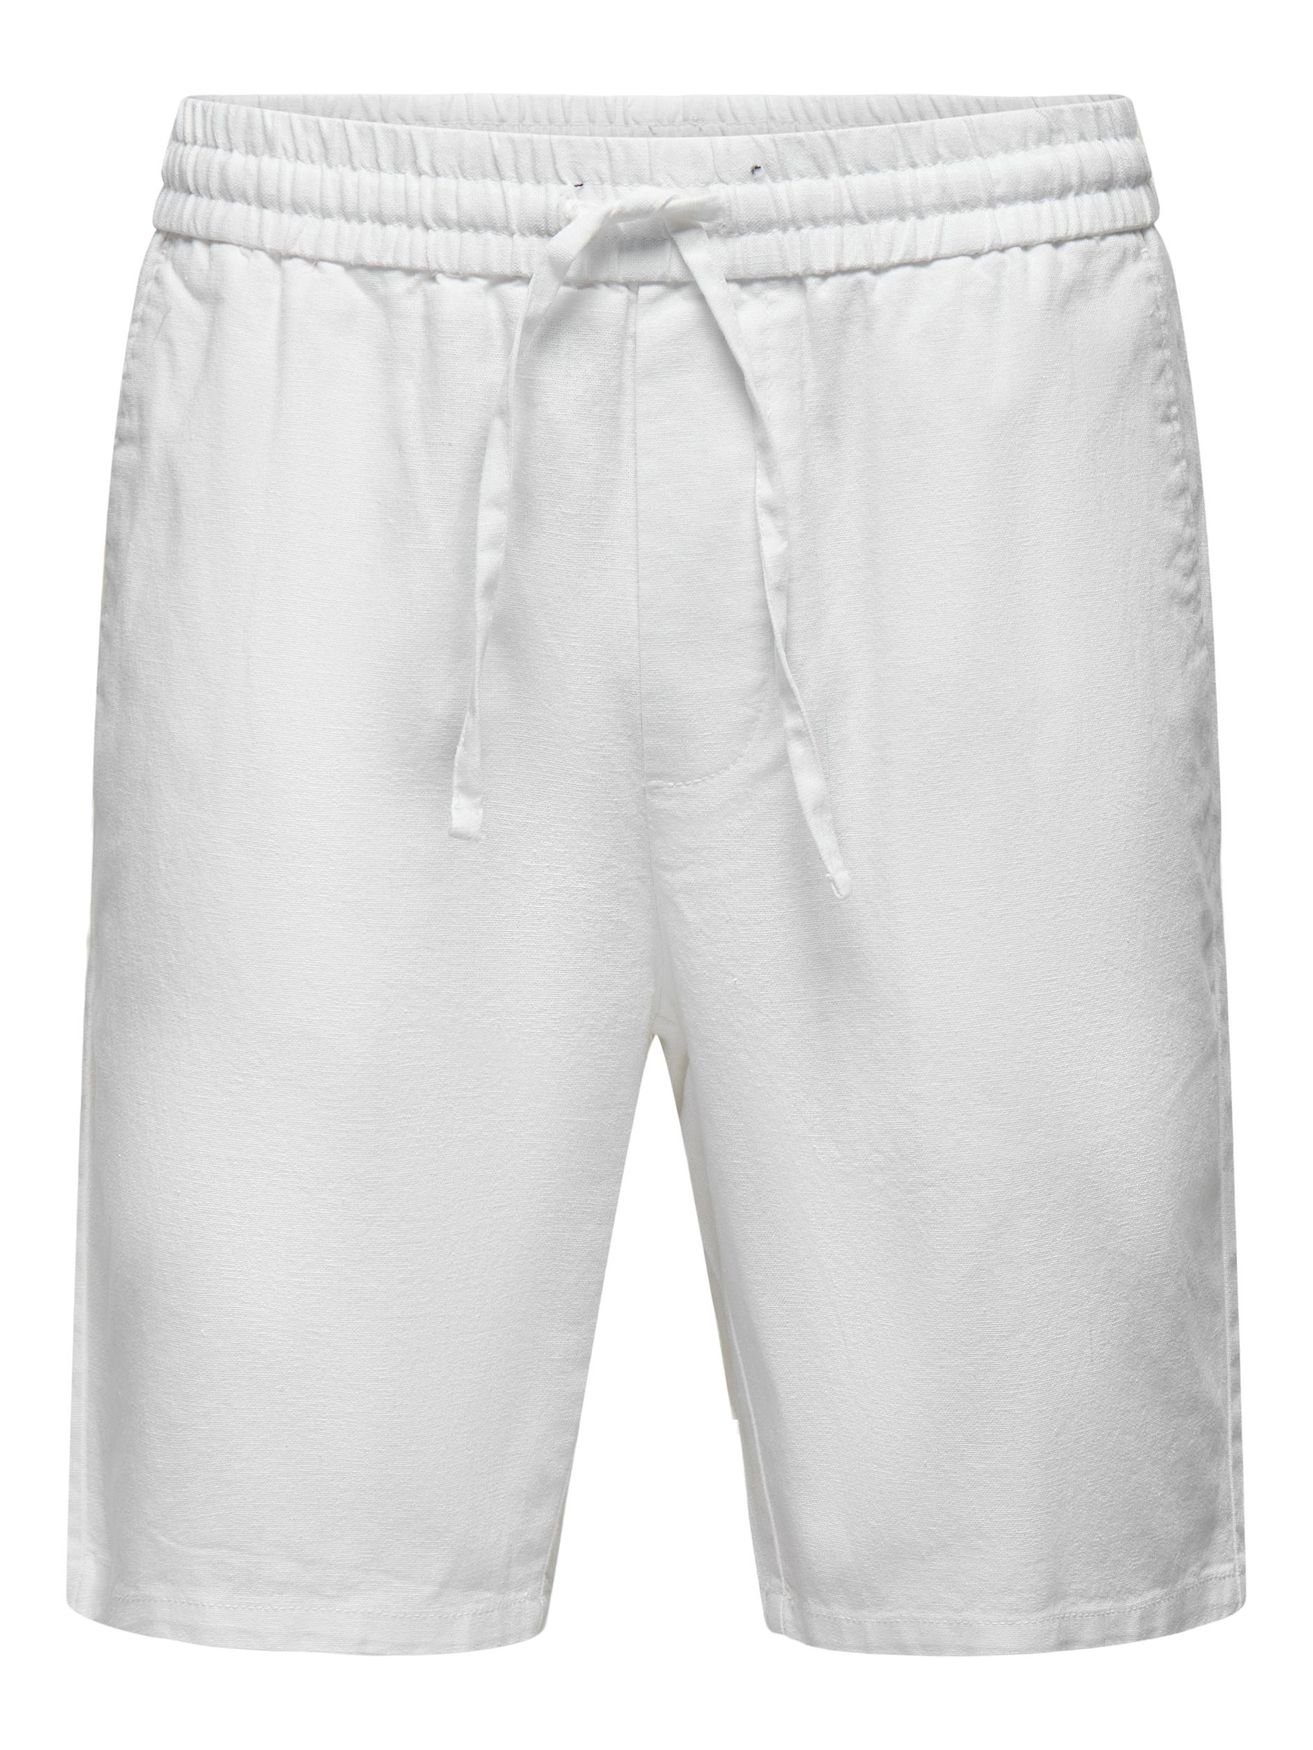 ONLY & SONS Chinoshorts 5058 Hose Weiß ONSLINUS in Leichte Bermuda Stoff Shorts